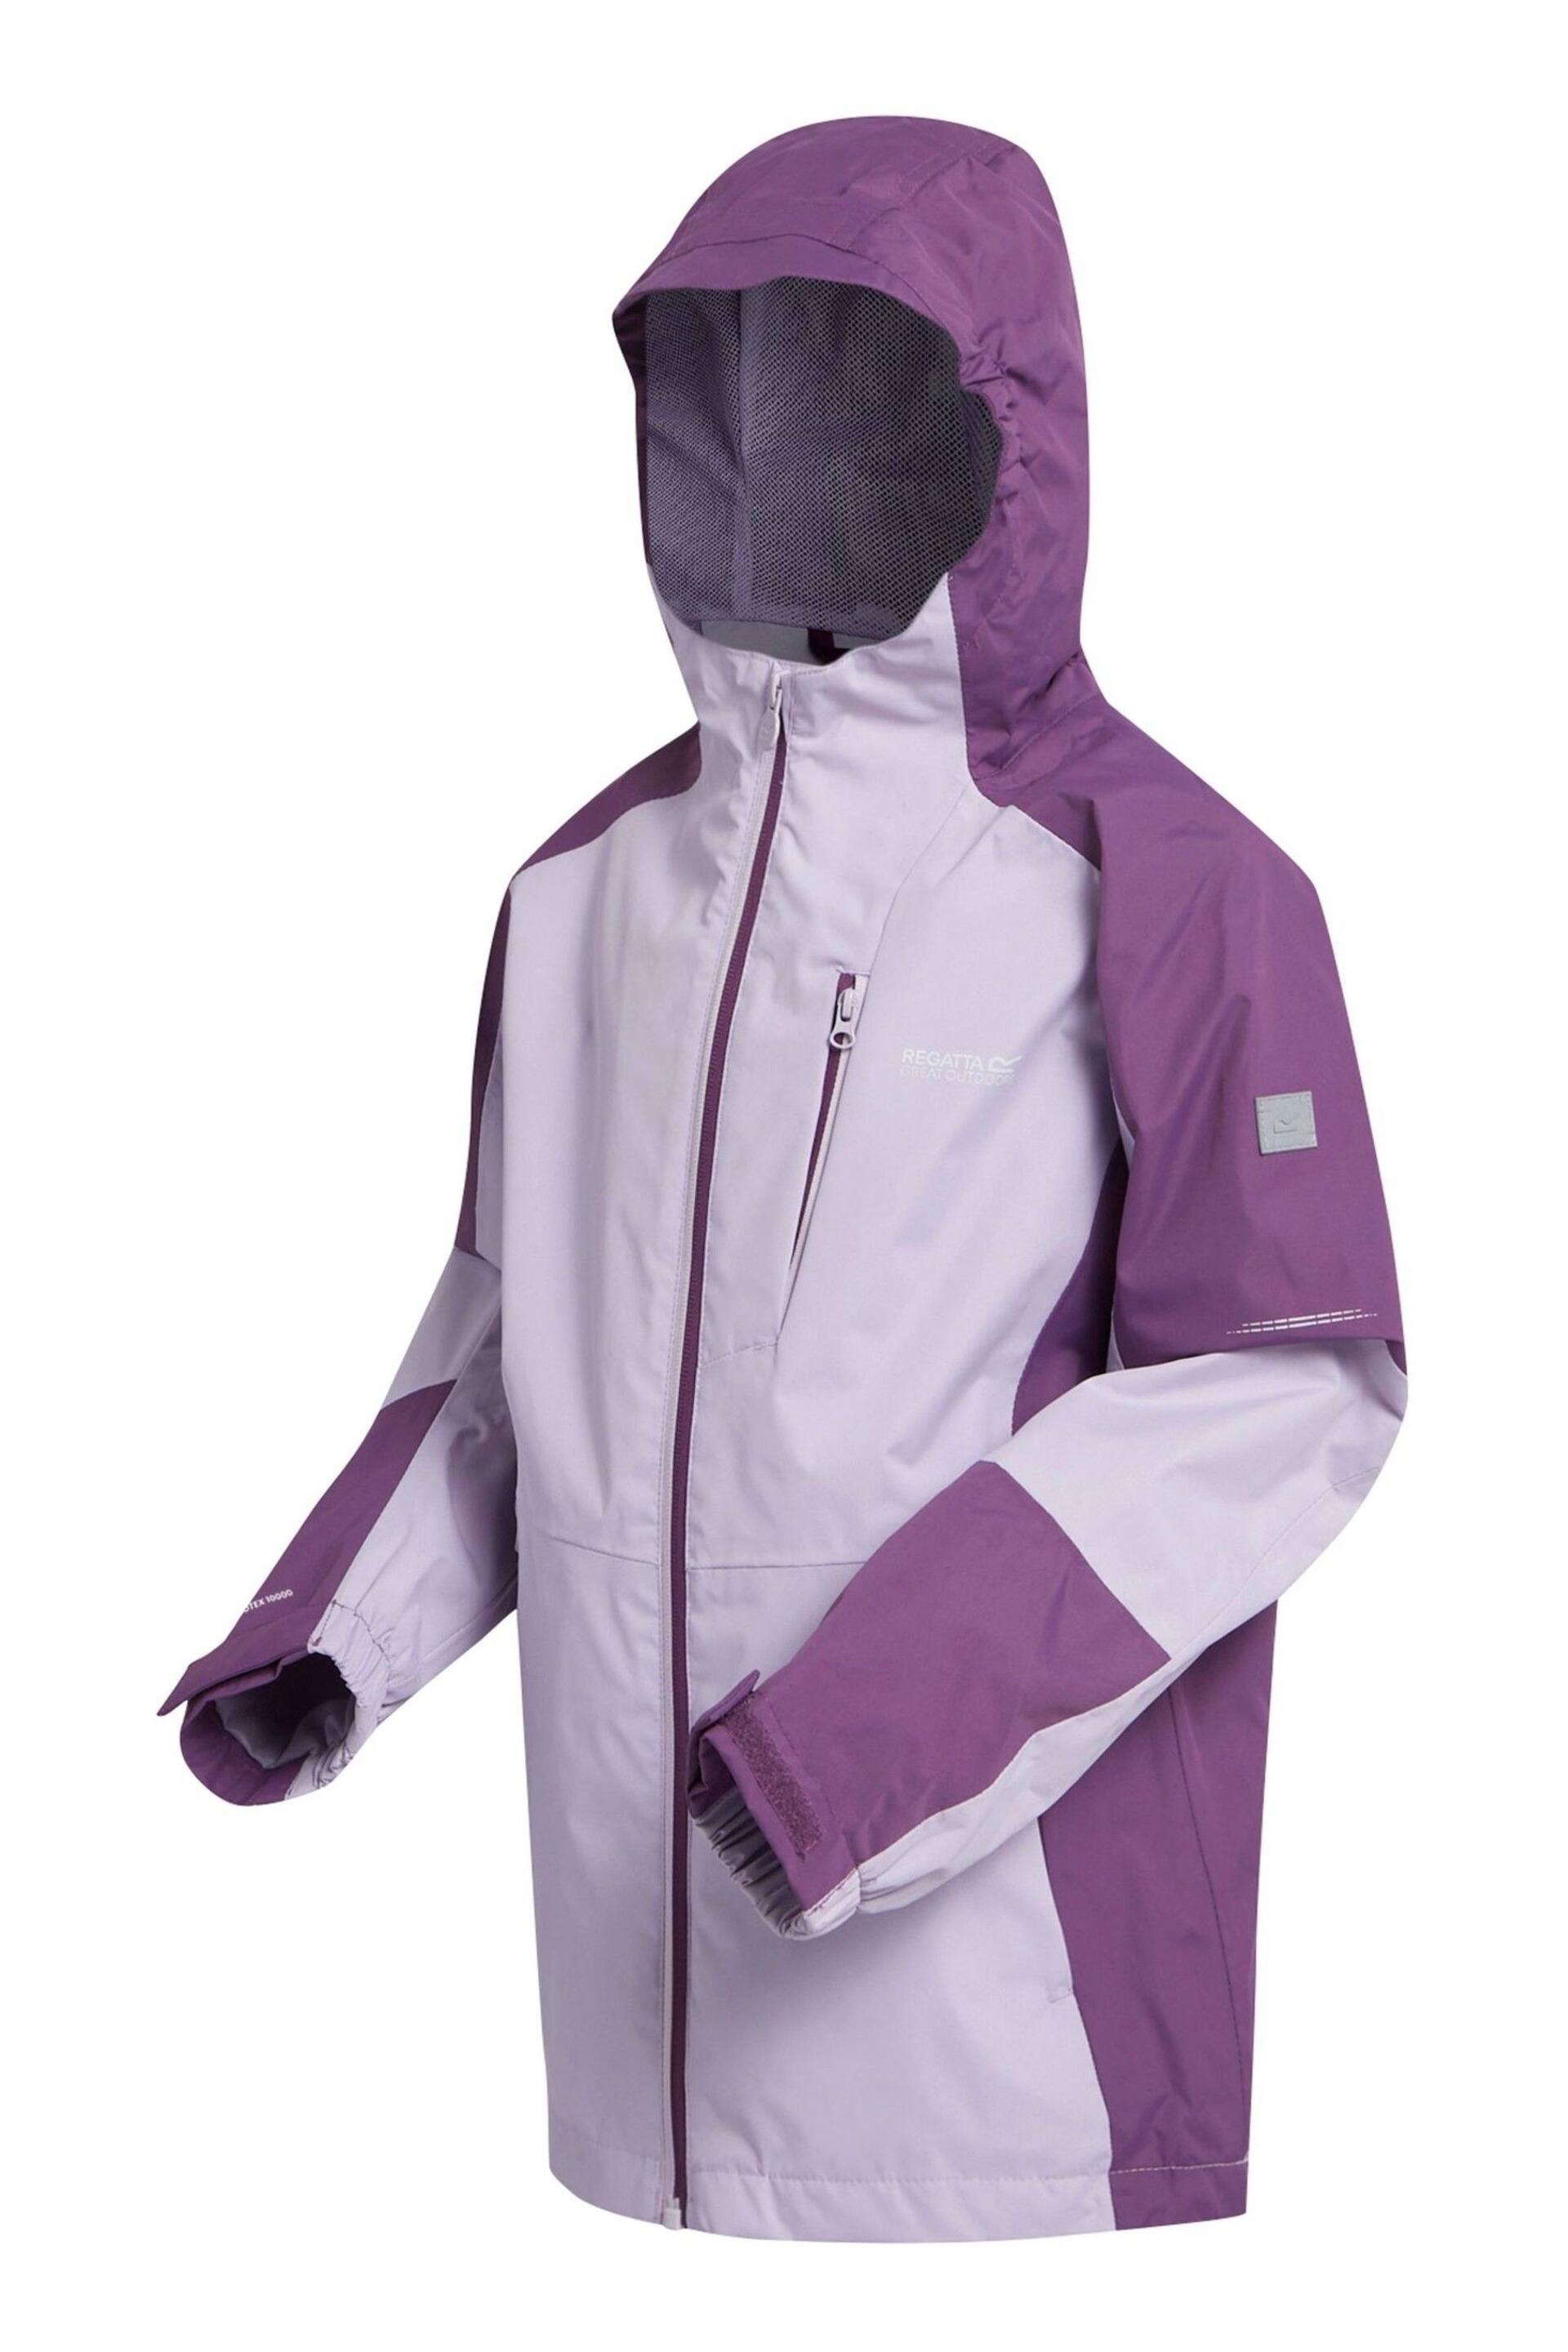 Regatta Purple Calderdale III Waterproof Jacket - Image 9 of 9